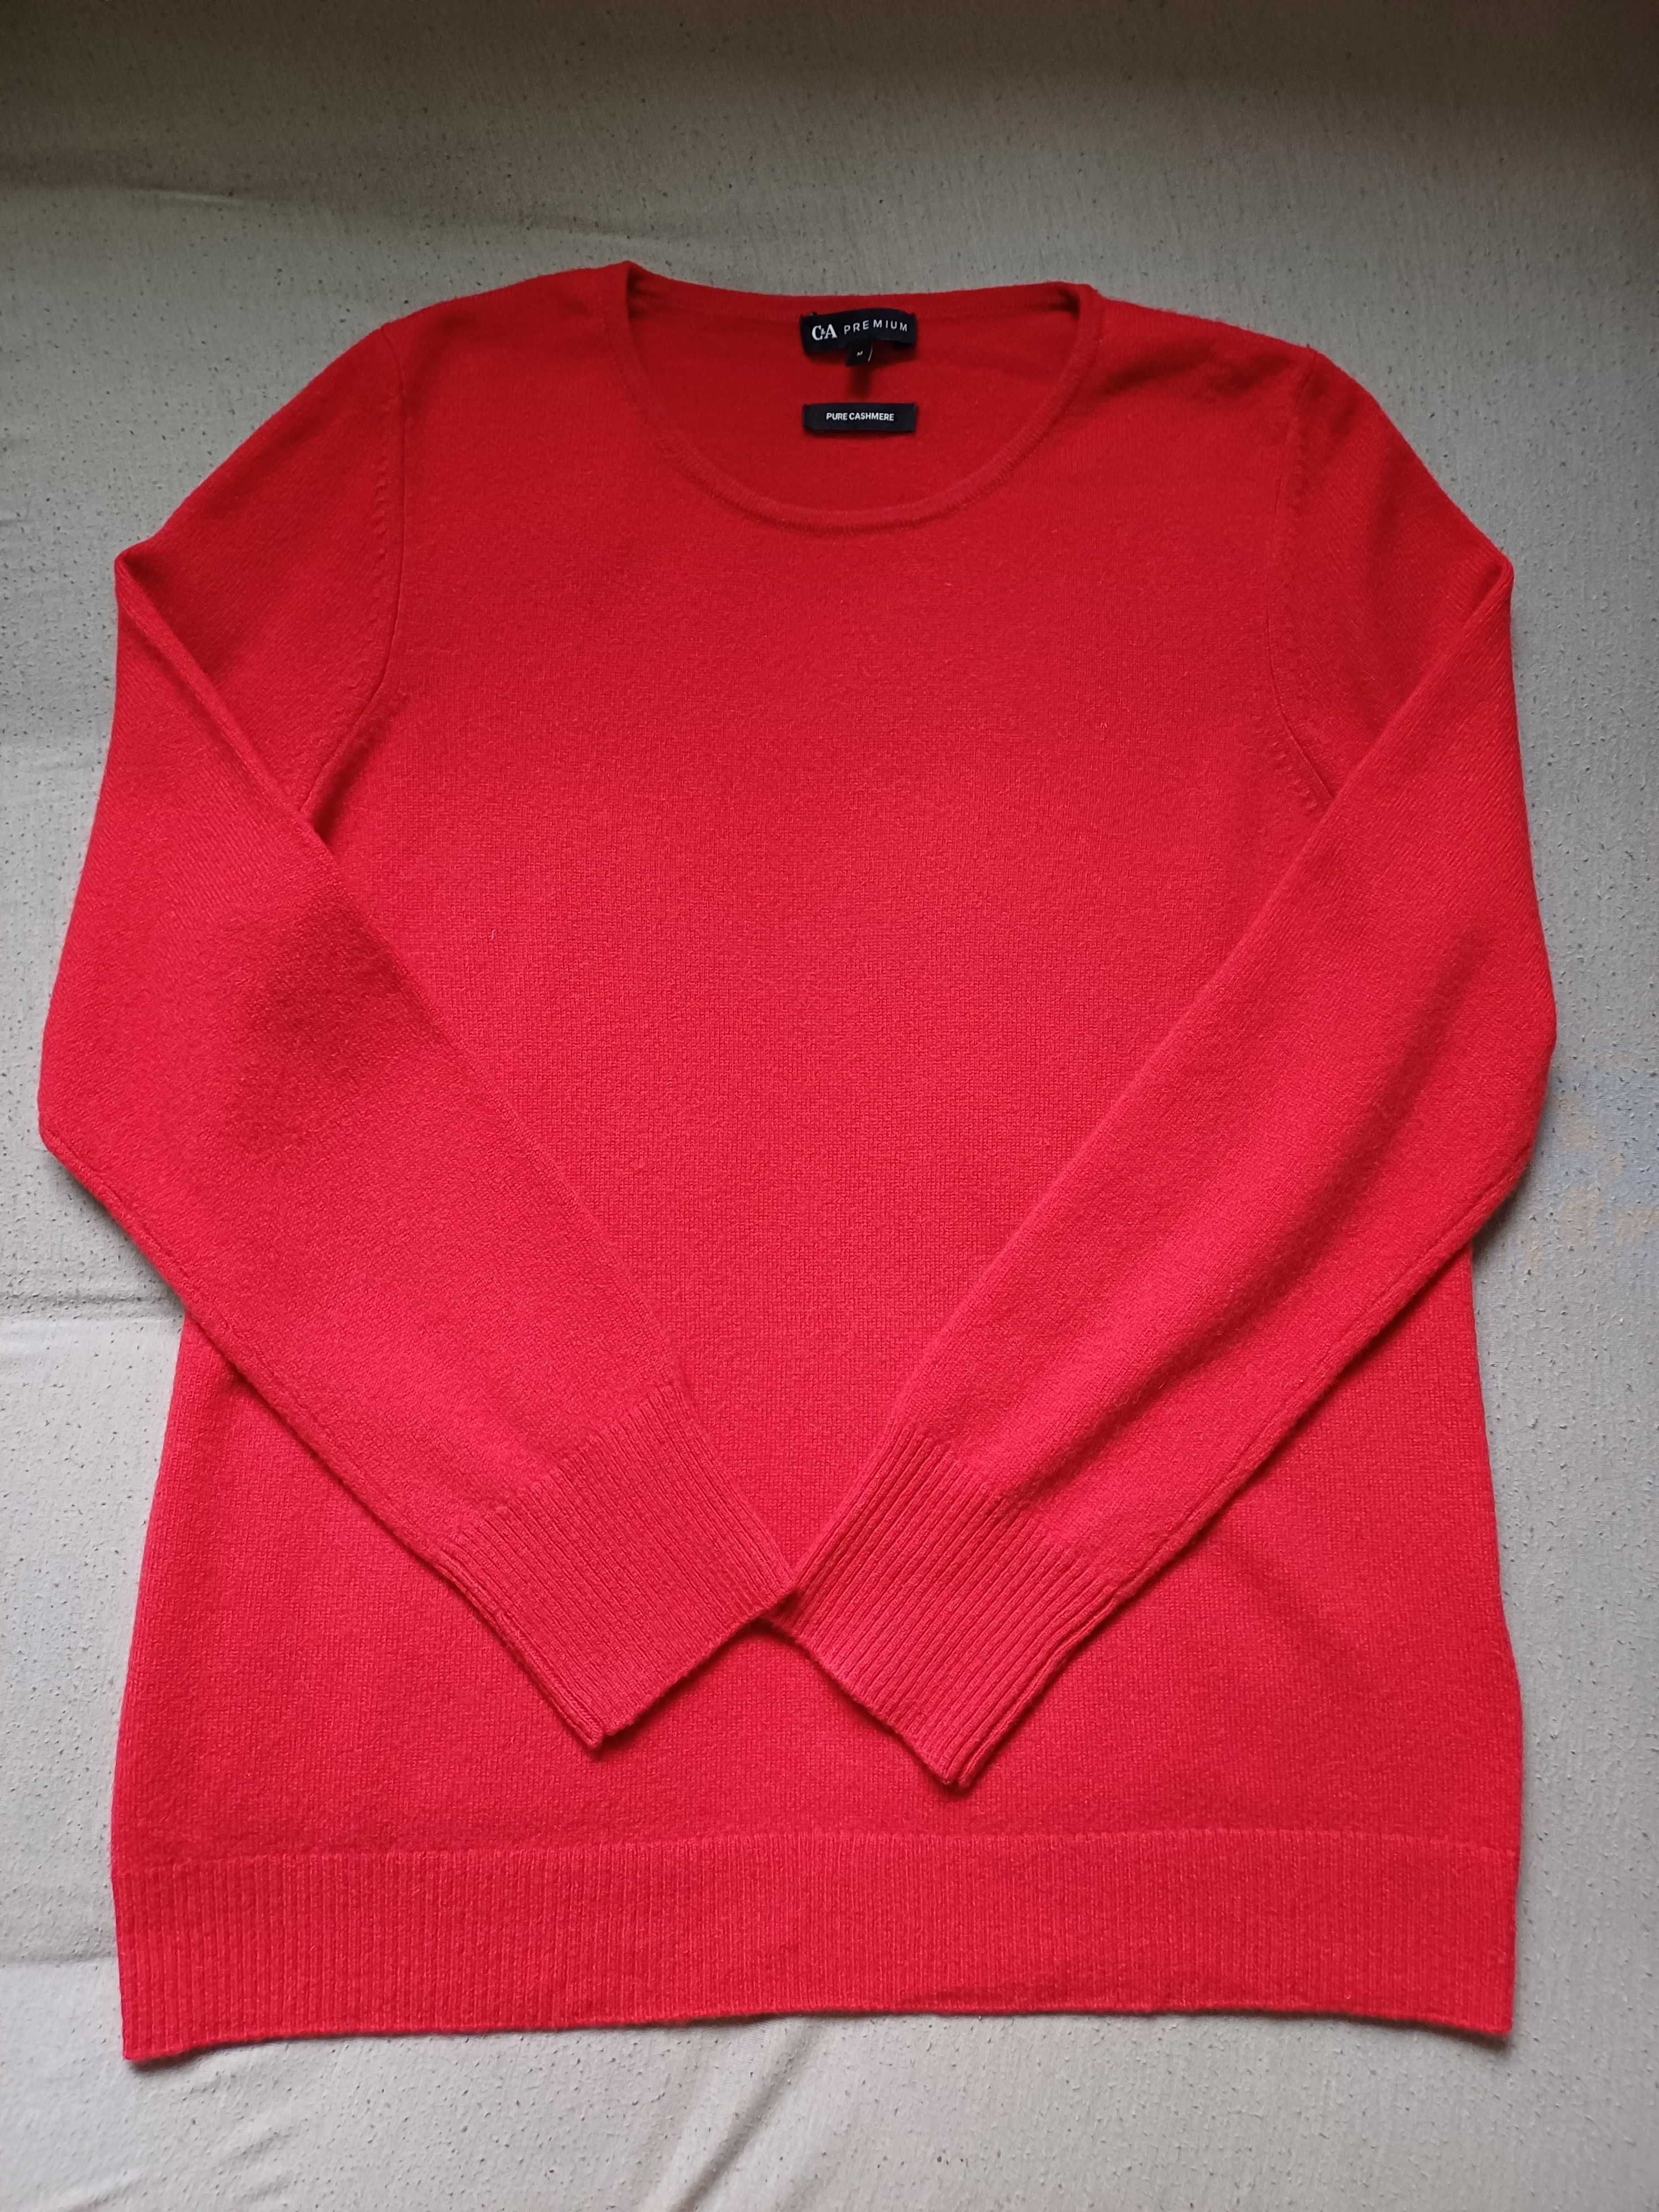 Kaszmirowy sweter C&A Premium rozmiar M